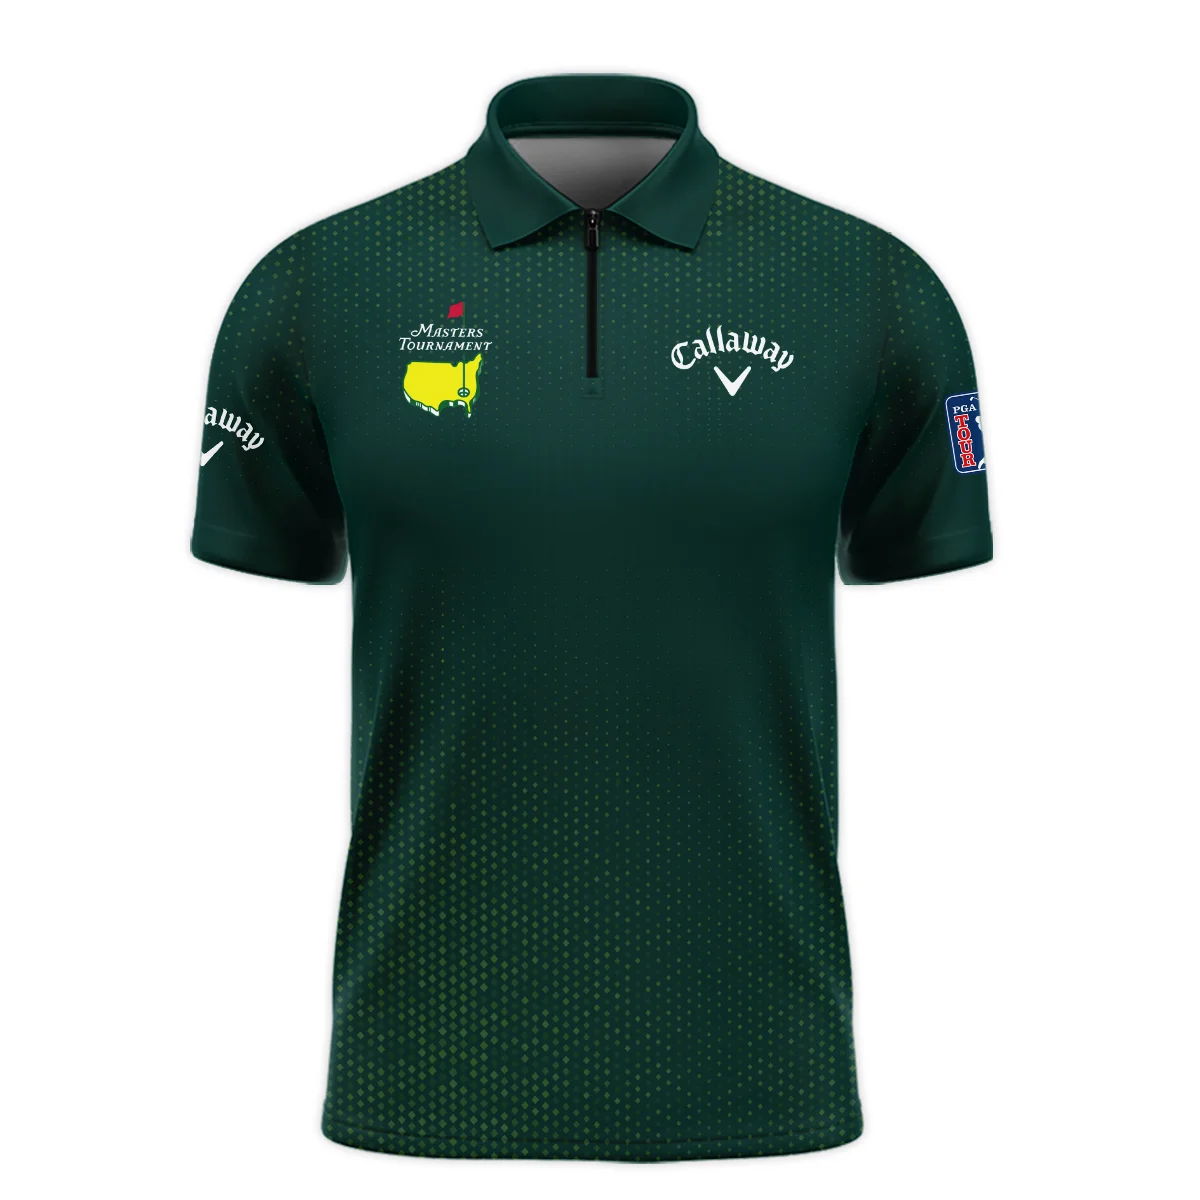 Golf Sport Masters Tournament Callaway Zipper Polo Shirt Sports Dinamond Shape Dark Green Zipper Polo Shirt For Men